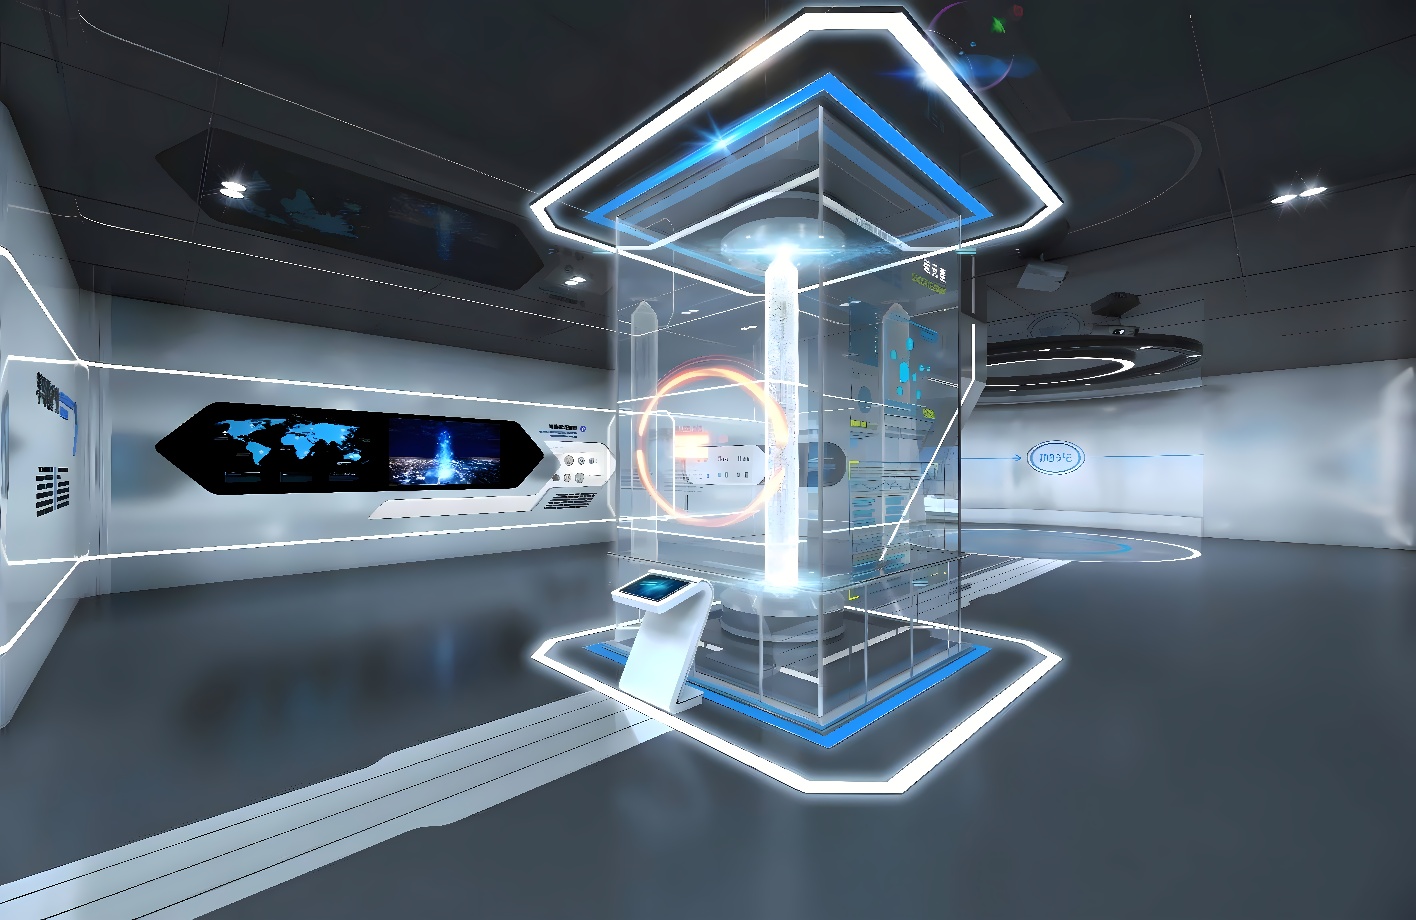 这是一张展示现代科技感的室内设计图，中心有未来风格的互动装置，周围布置有屏幕和信息图表，整体色调以白色和蓝色为主。